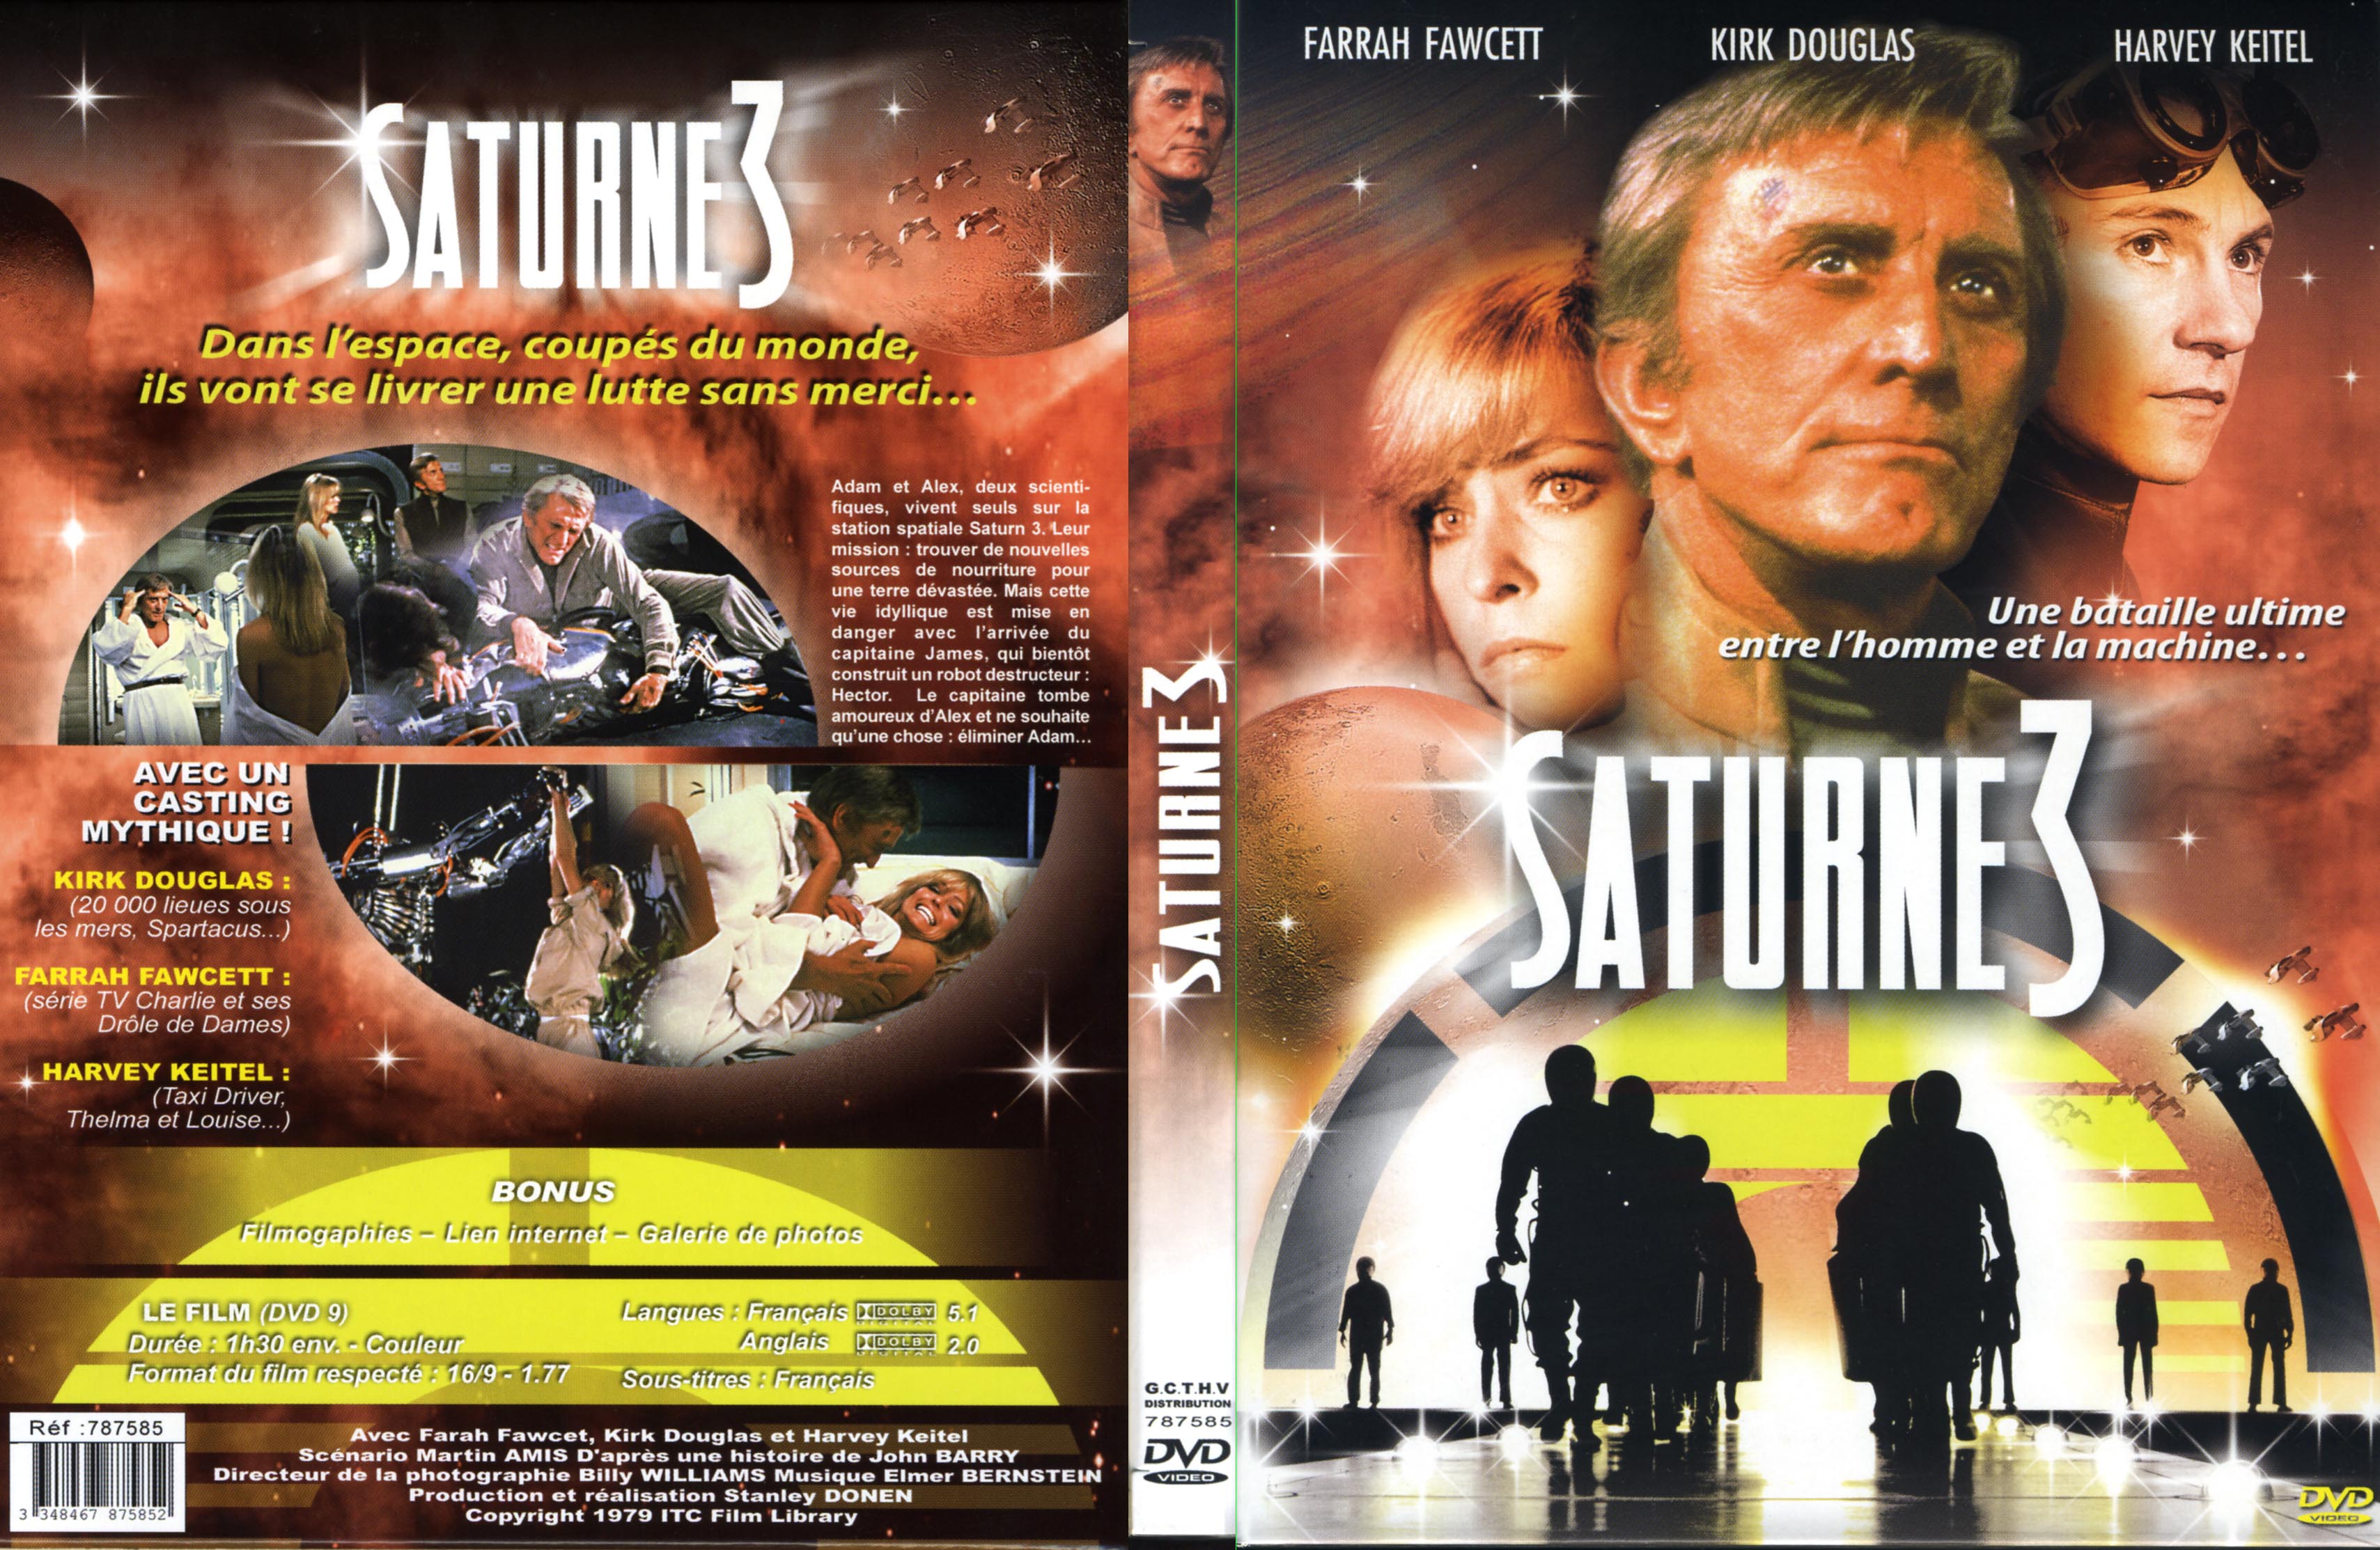 Jaquette DVD Saturn 3 v3